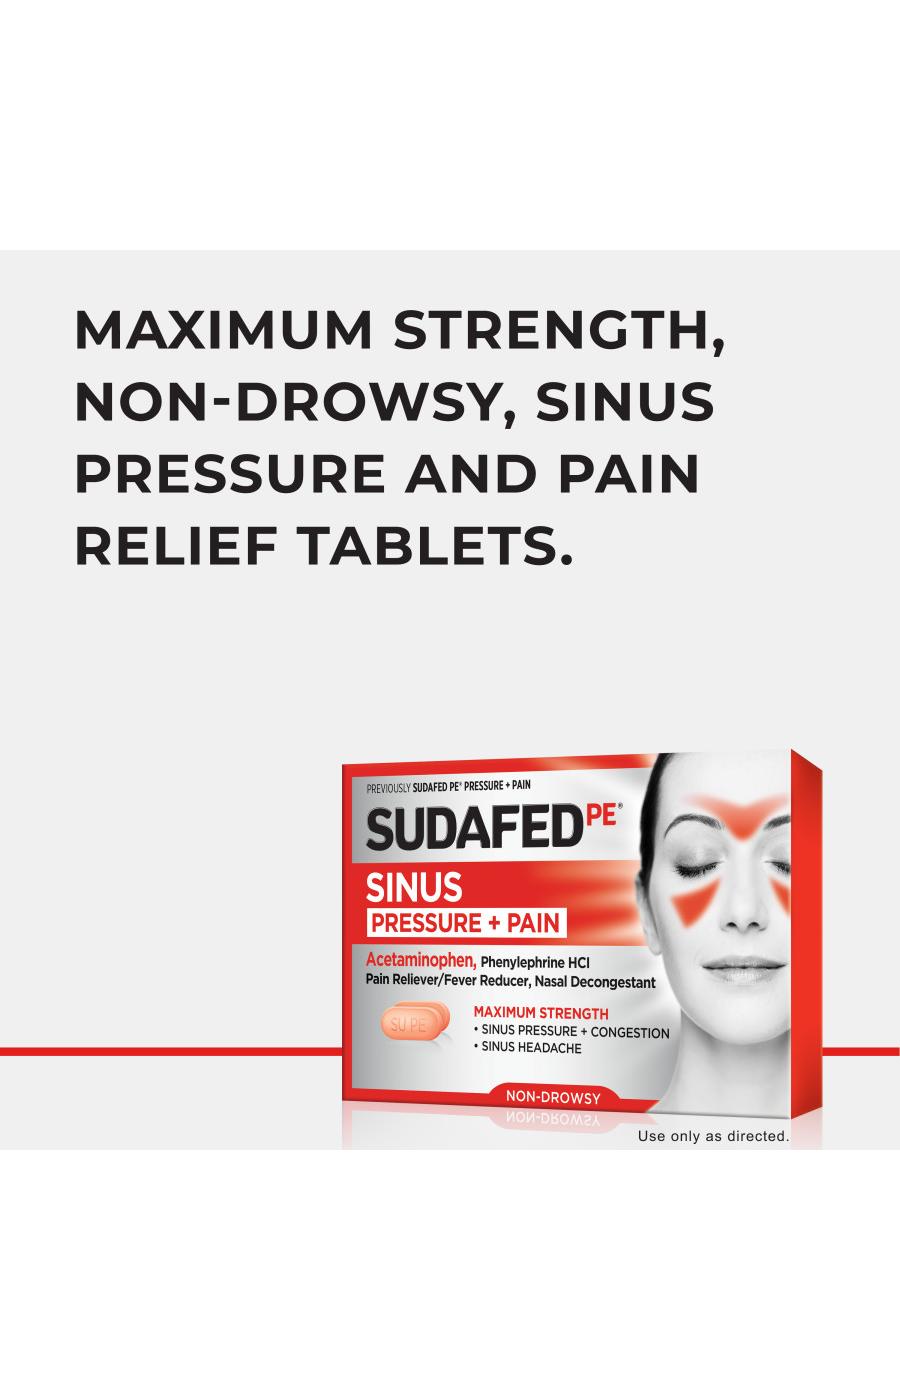 Sudafed PE Sinus Pressure + Pain Tablets; image 5 of 7